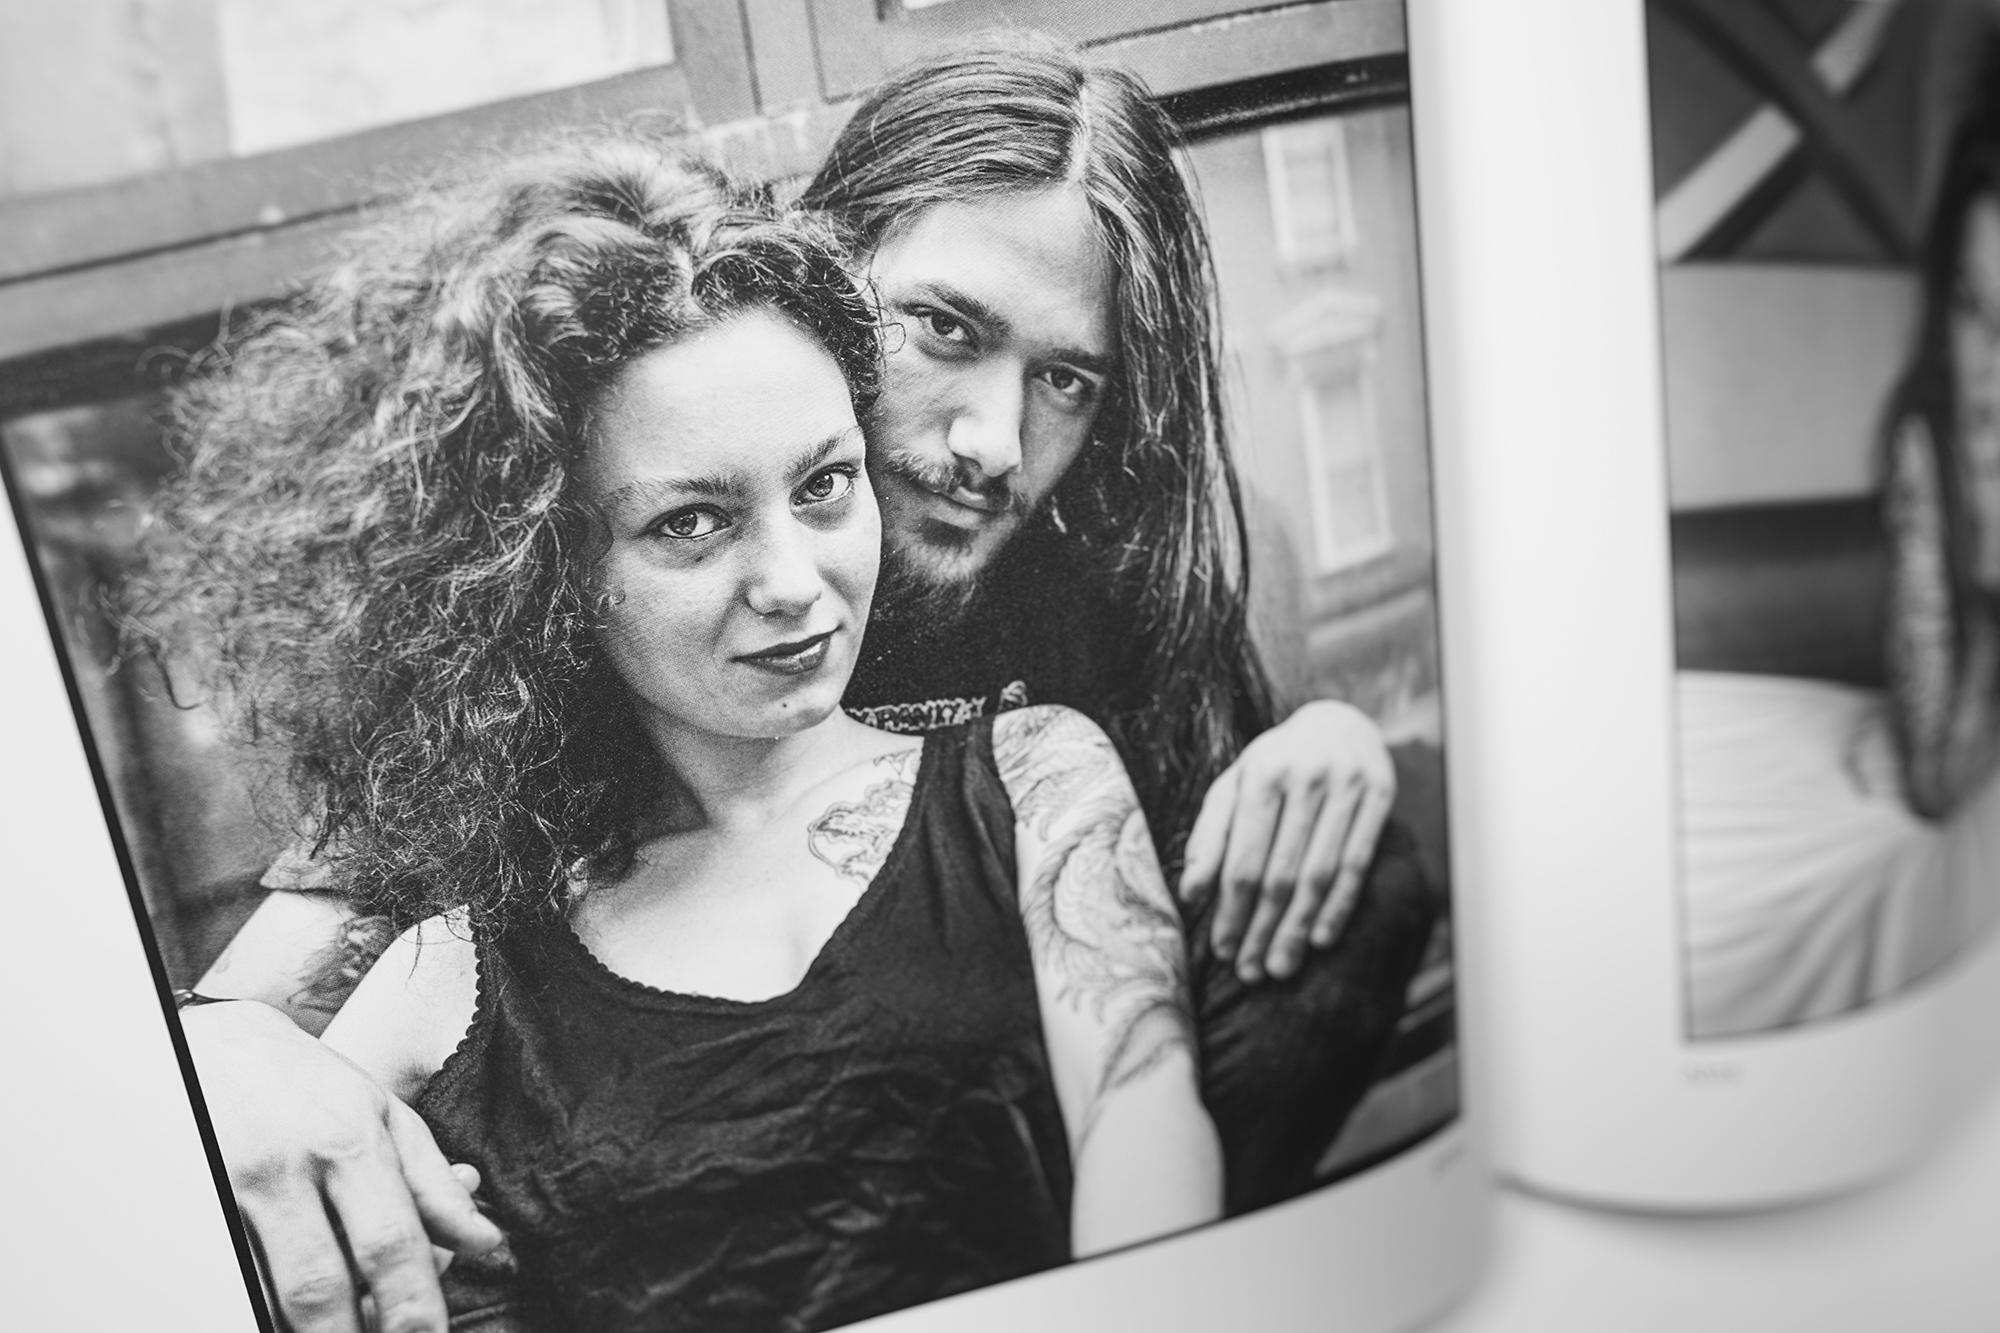 Loretta Leu and Filip Leu, photo copyright by Dianne mansfield